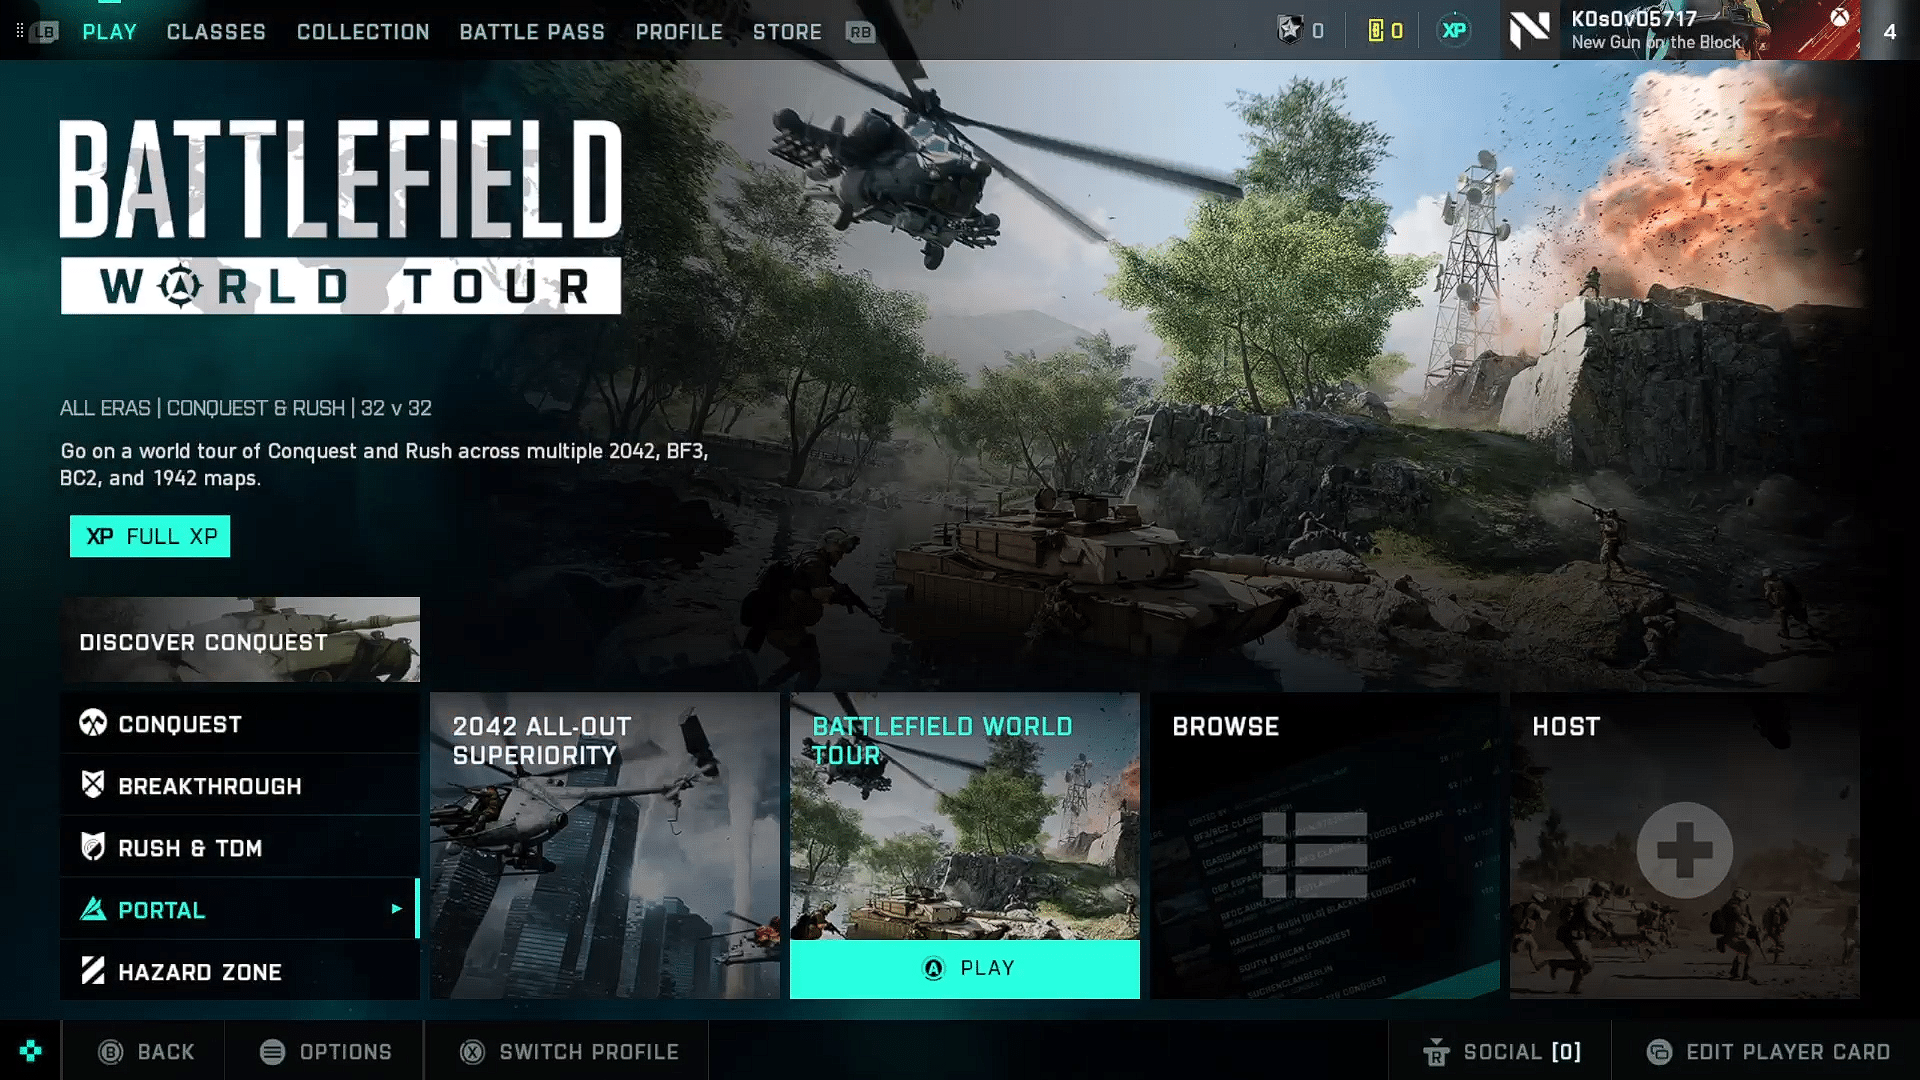 New Battlefield 2042 Portal Modes March 28 Season 4 Week 5